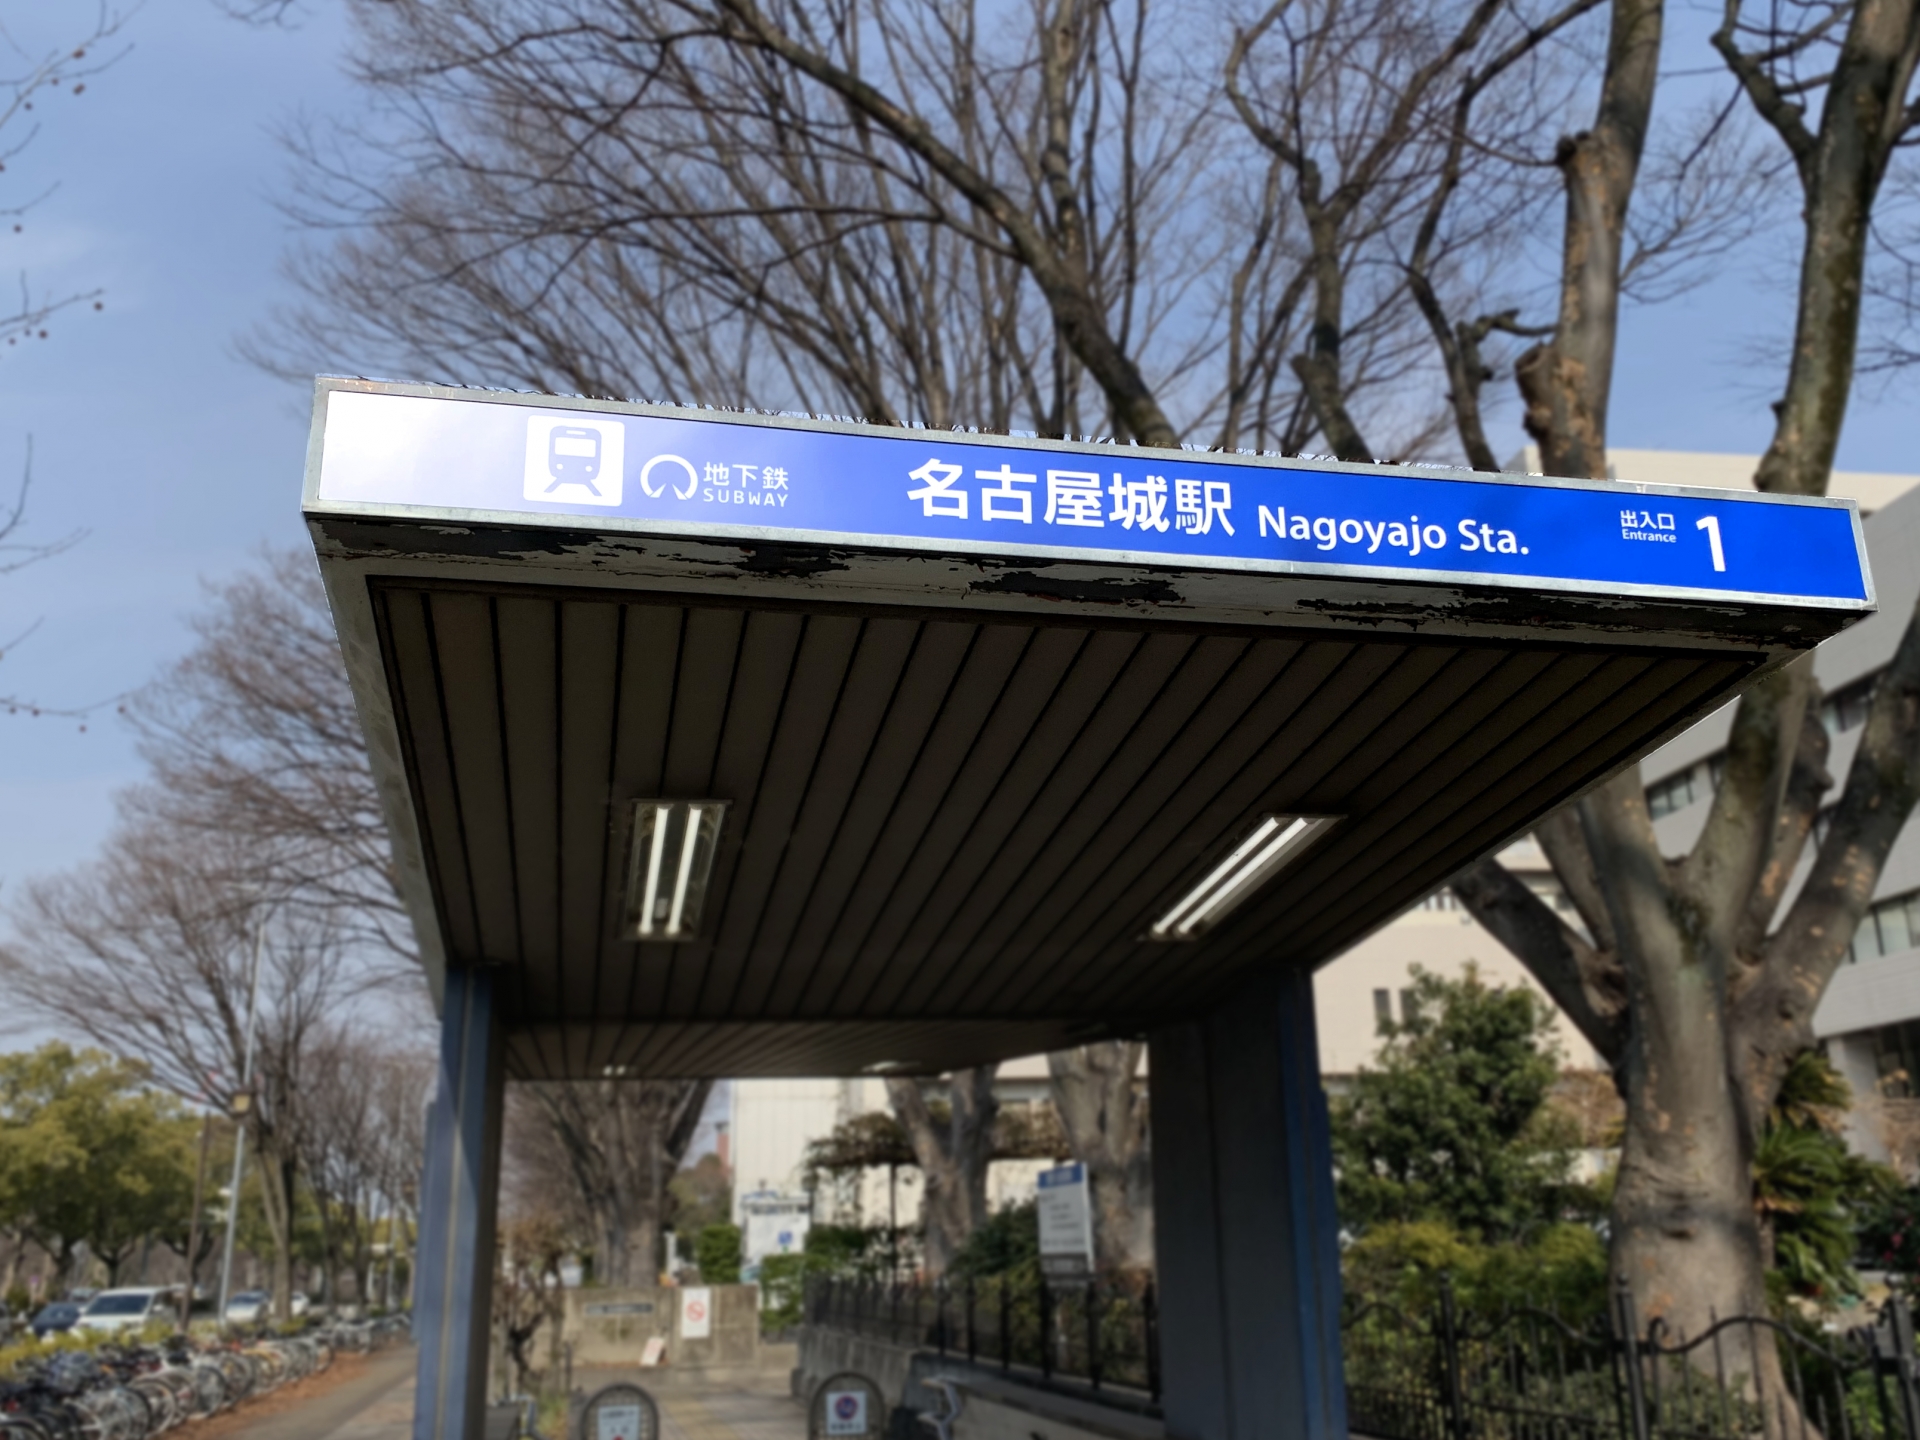 名古屋市営地下鉄の営業キロ数は約93�q、駅数は87駅。1に位置当たりの乗車人員はコロナ禍まで7年連続増加し、2019年度は130万人を突破していた。画像は駅名が変わった名古屋城駅の出口。